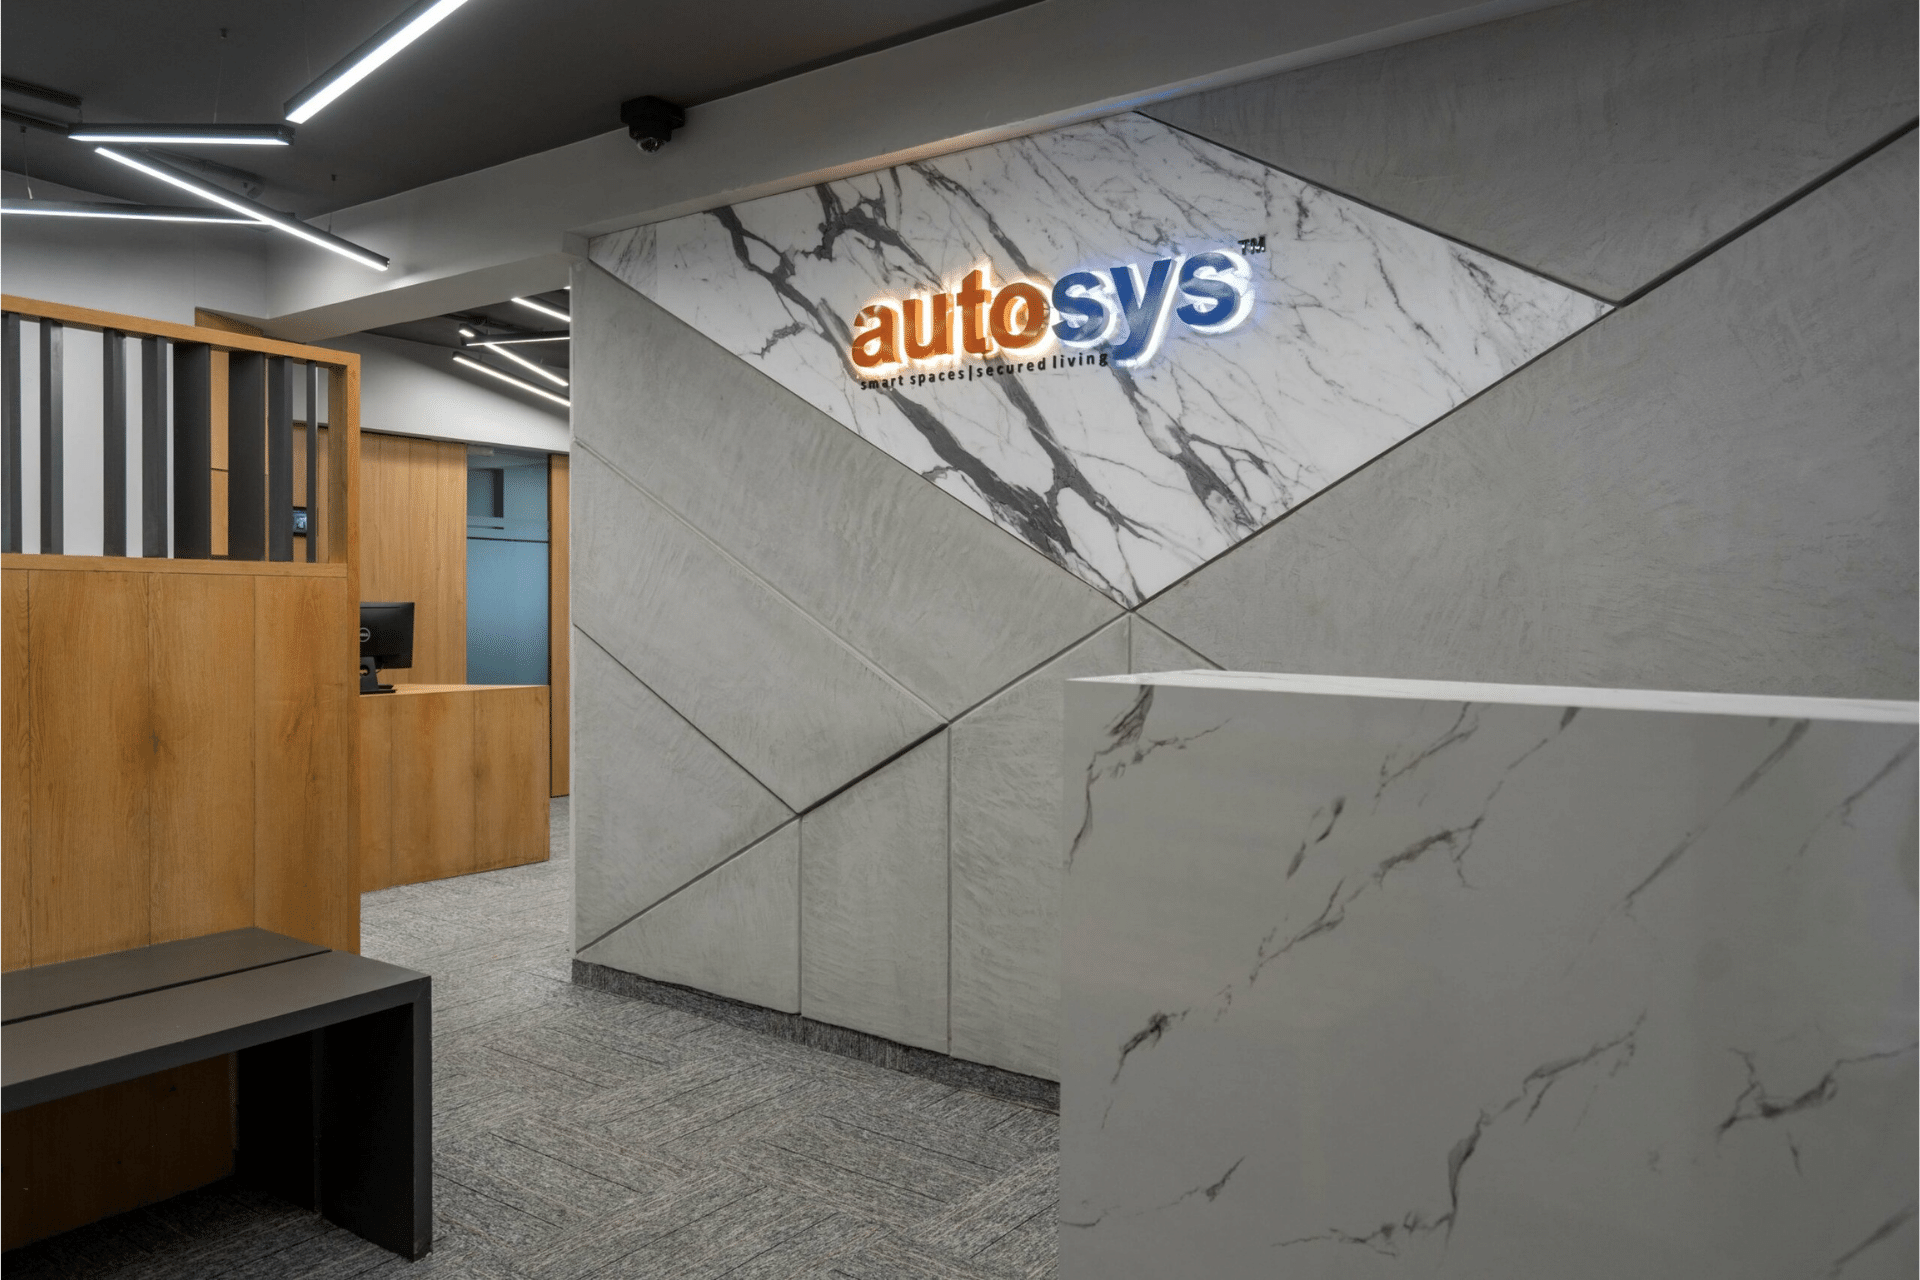 Autosys Office